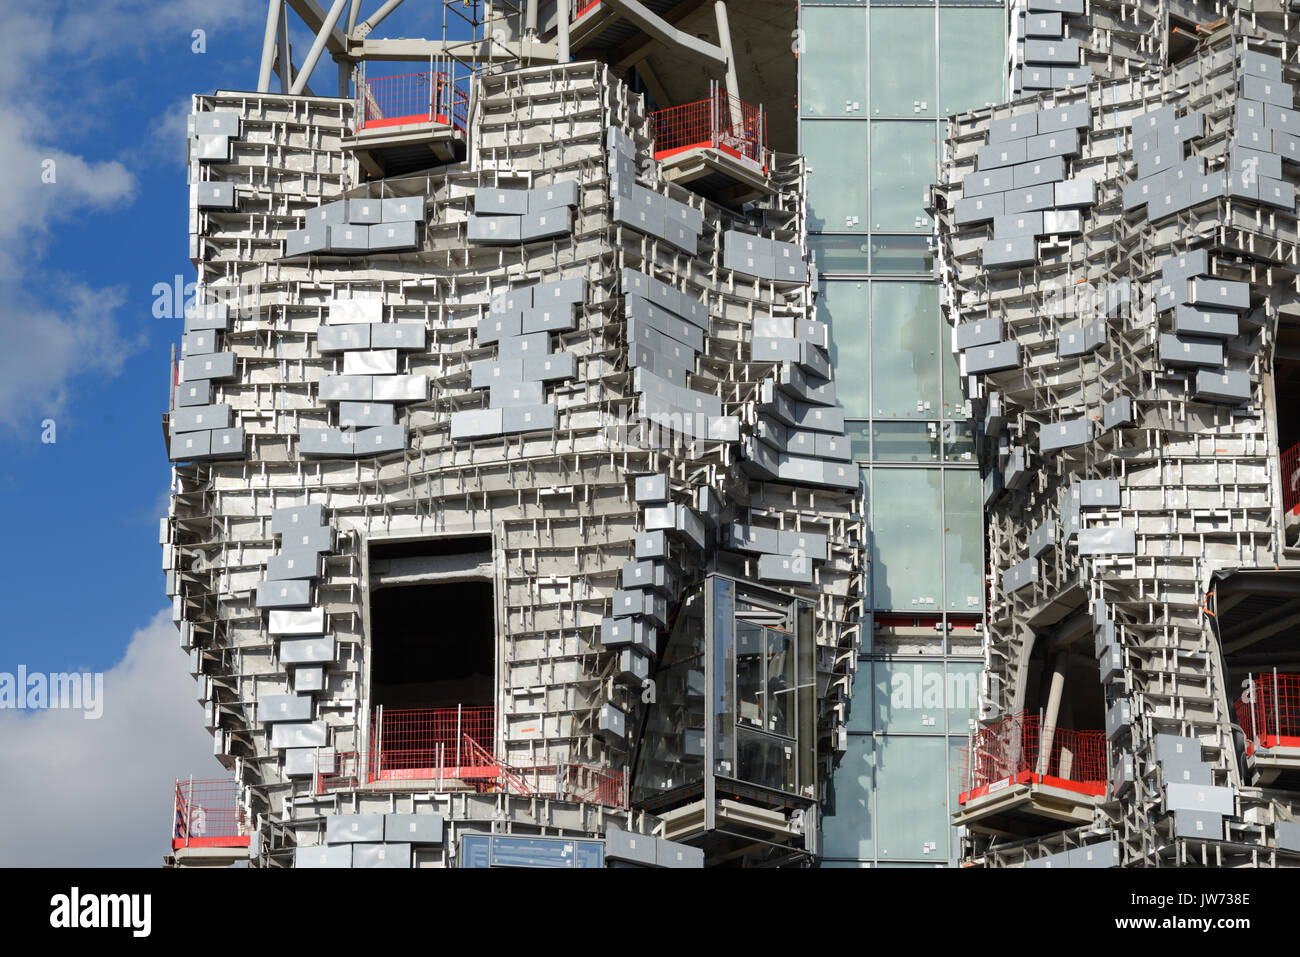 Arles, France. 11 août, 2017. Frank Gehry Tower prend forme à Arles. L'un des derniers projets en dirigeant, architecte américain Frank Gehry, prend forme à Arles, célèbre pour ses rencontres annuelles' Festival Photo, dans le sud de la France. Augmentation de 58 mètres au-dessus de la basse ville, le bâtiment historique comprend une tour irrégulière doublés en acier poli et panneaux de verre. En raison de l'achèvement de l'année prochaine, la tour abritera un centre d'art expérimental, 'LUMA Arles", financé par le philanthrope suisse Maja Hoffmann. Crédit : Chris Hellier/Alamy Live News Banque D'Images